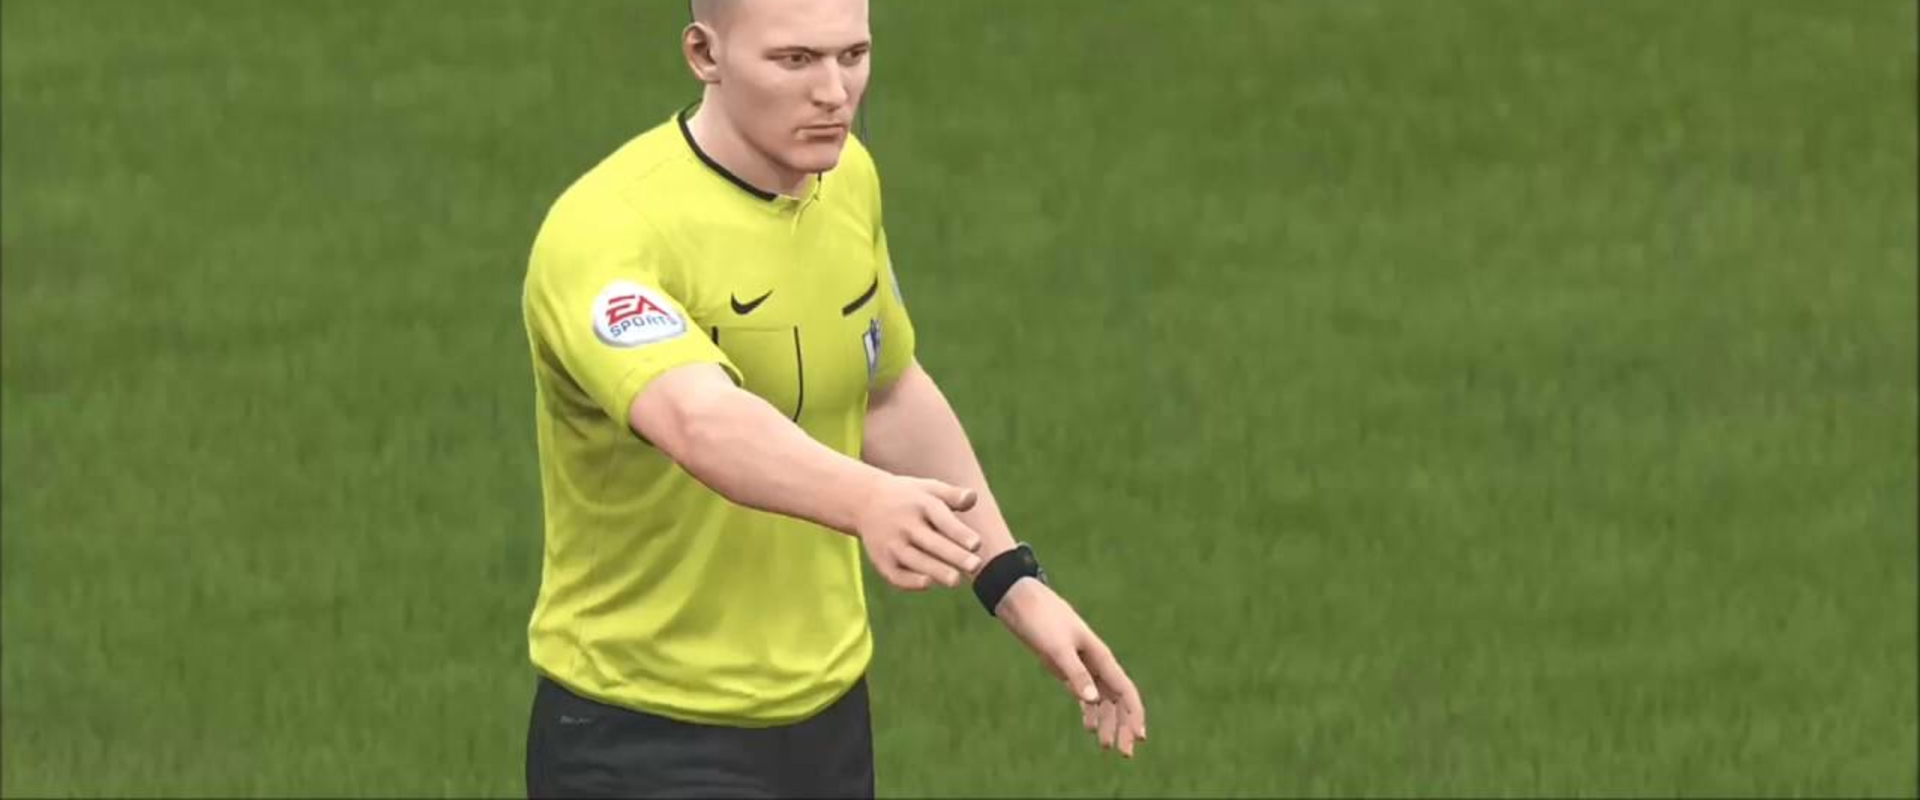 Mzizi lenne a legrosszabb játékvezető a FIFA18-ban?